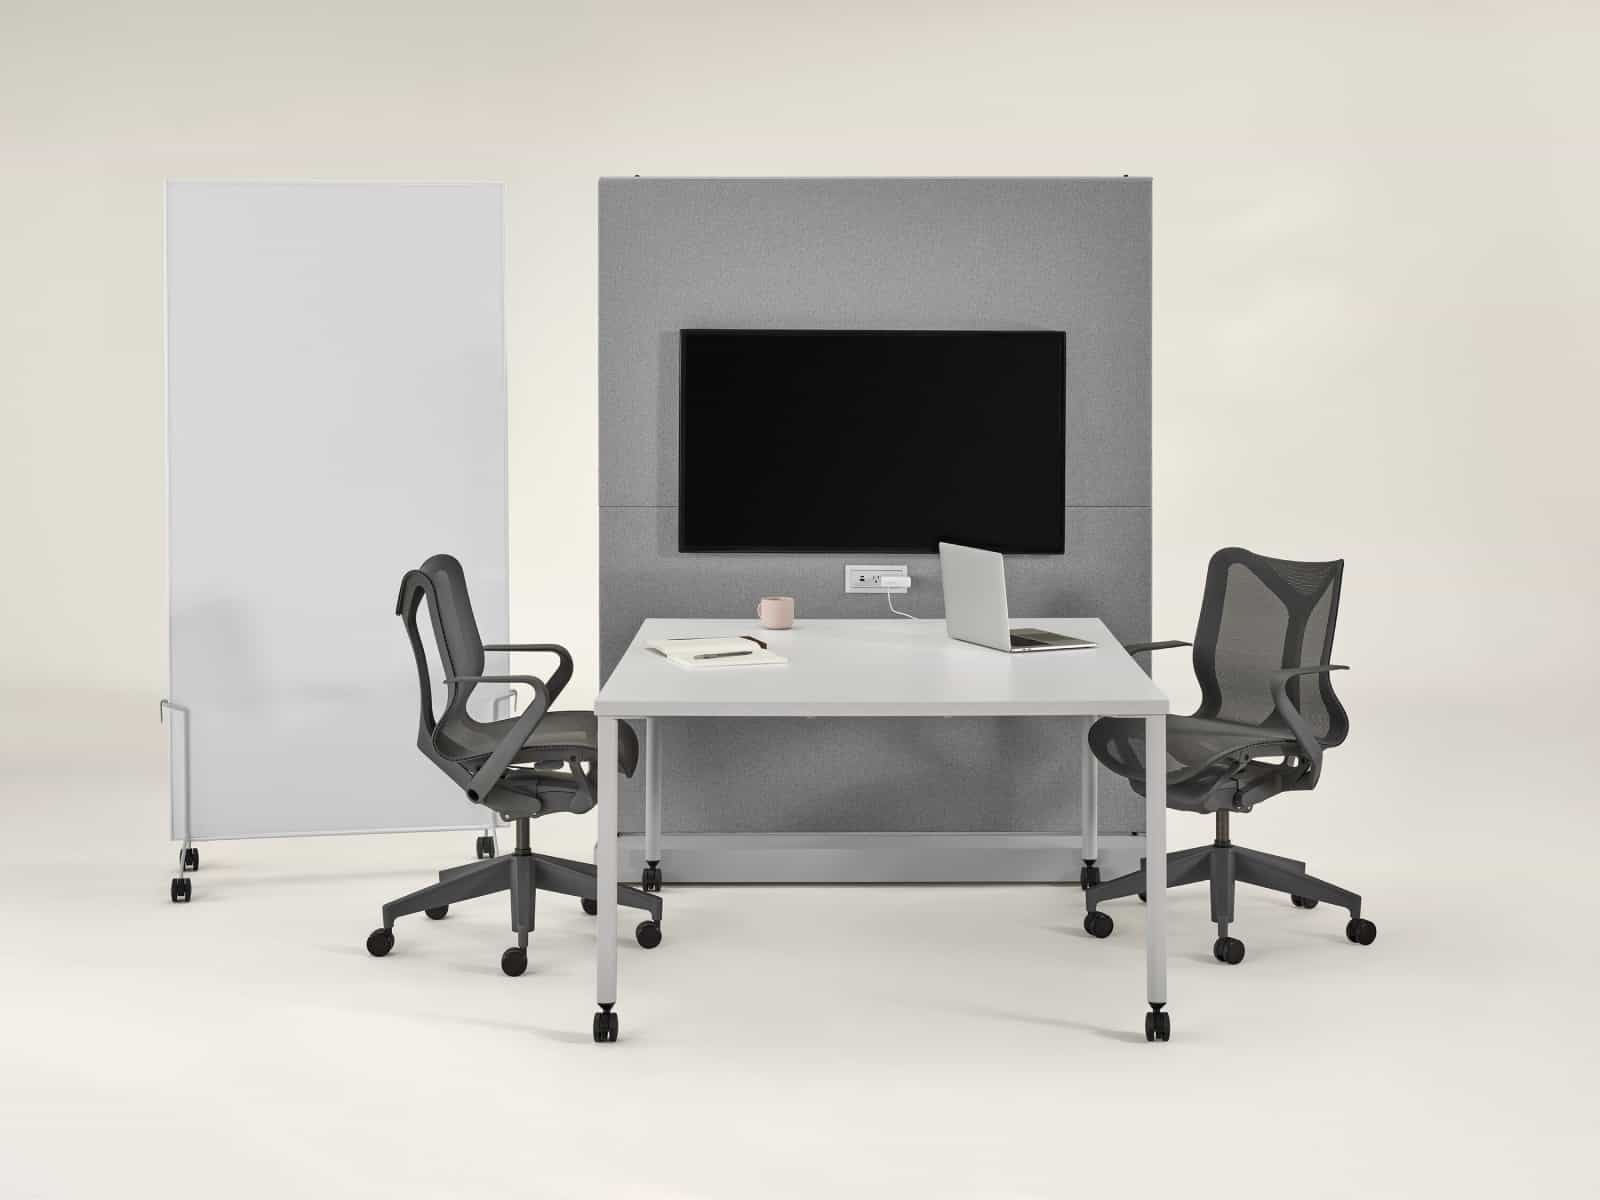 Agile Wall OE1 cinza com Mesa de projetos OE1 cinza, Mobile Easel OE1 cinza e quadro branco e cadeiras Cosm cinza-escuro.